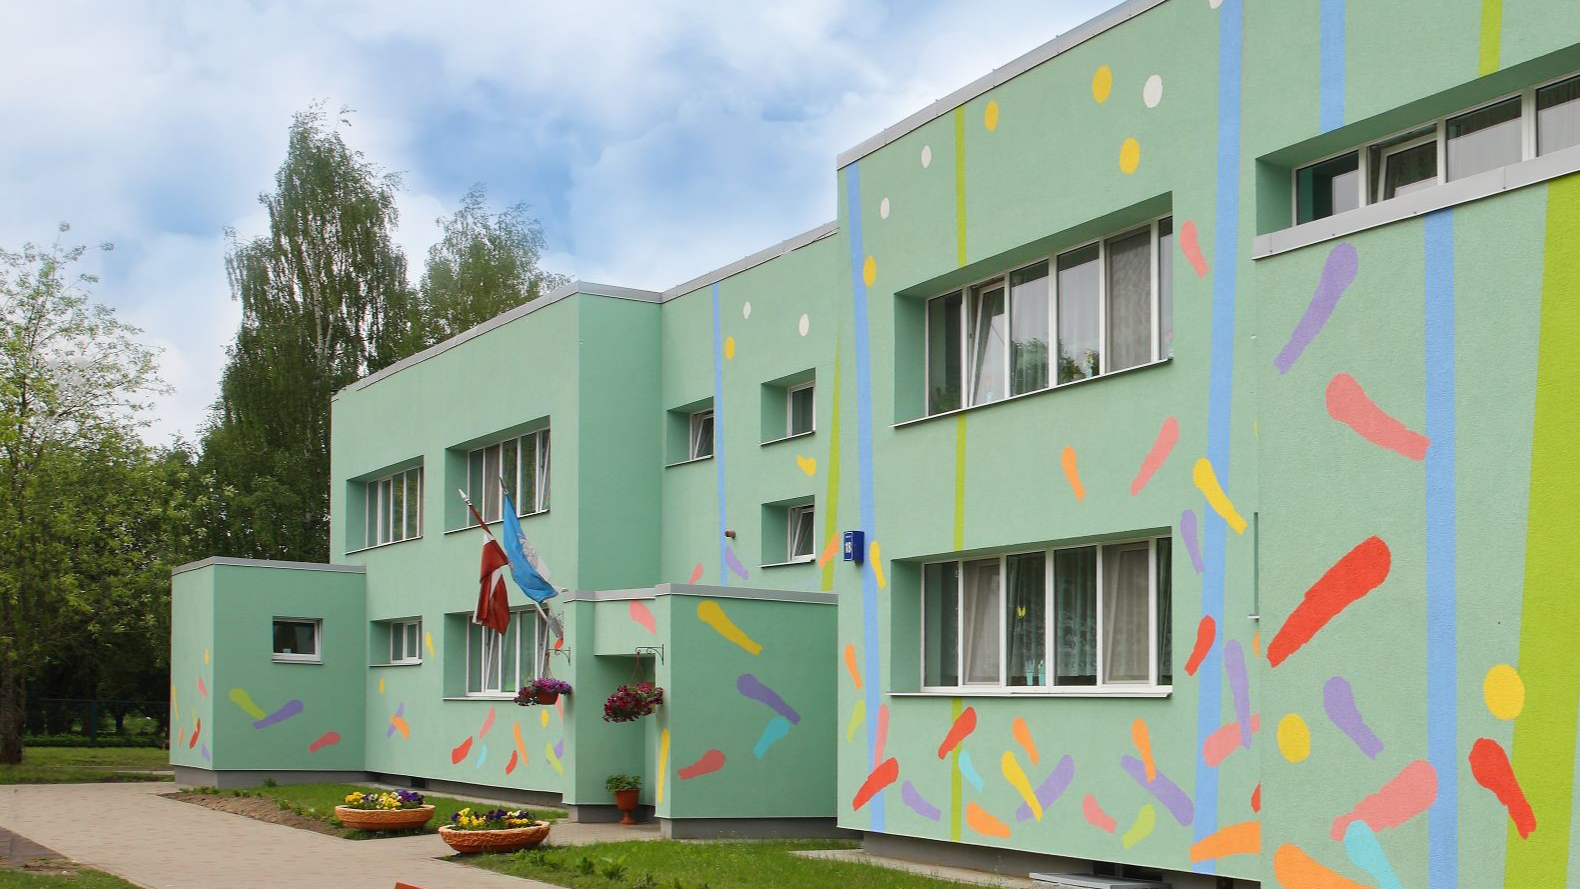 Rīgas 270. pirmsskolas izglītības iestādes projekts “Skaista vide - skaistai nākotnei”